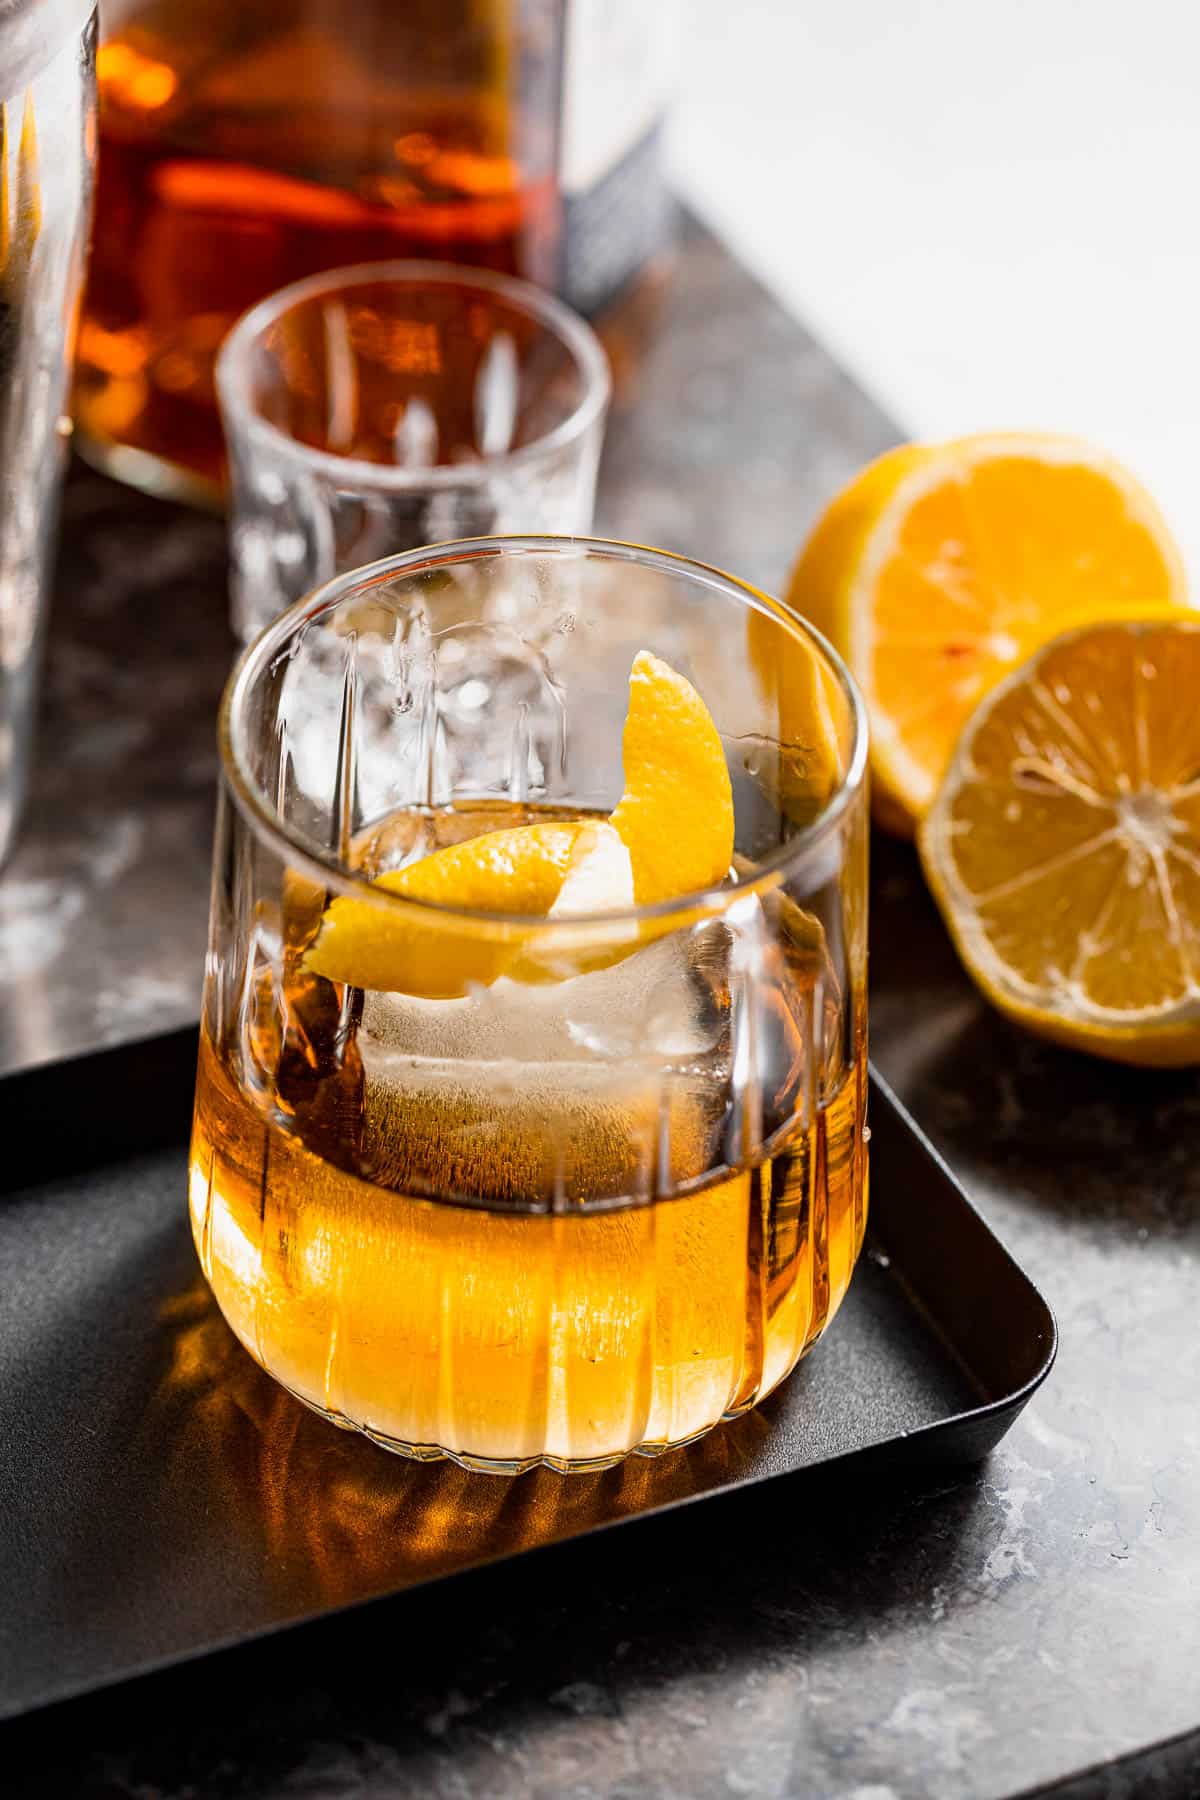 A godmother drink garnished with orange zest on a black serving tray.